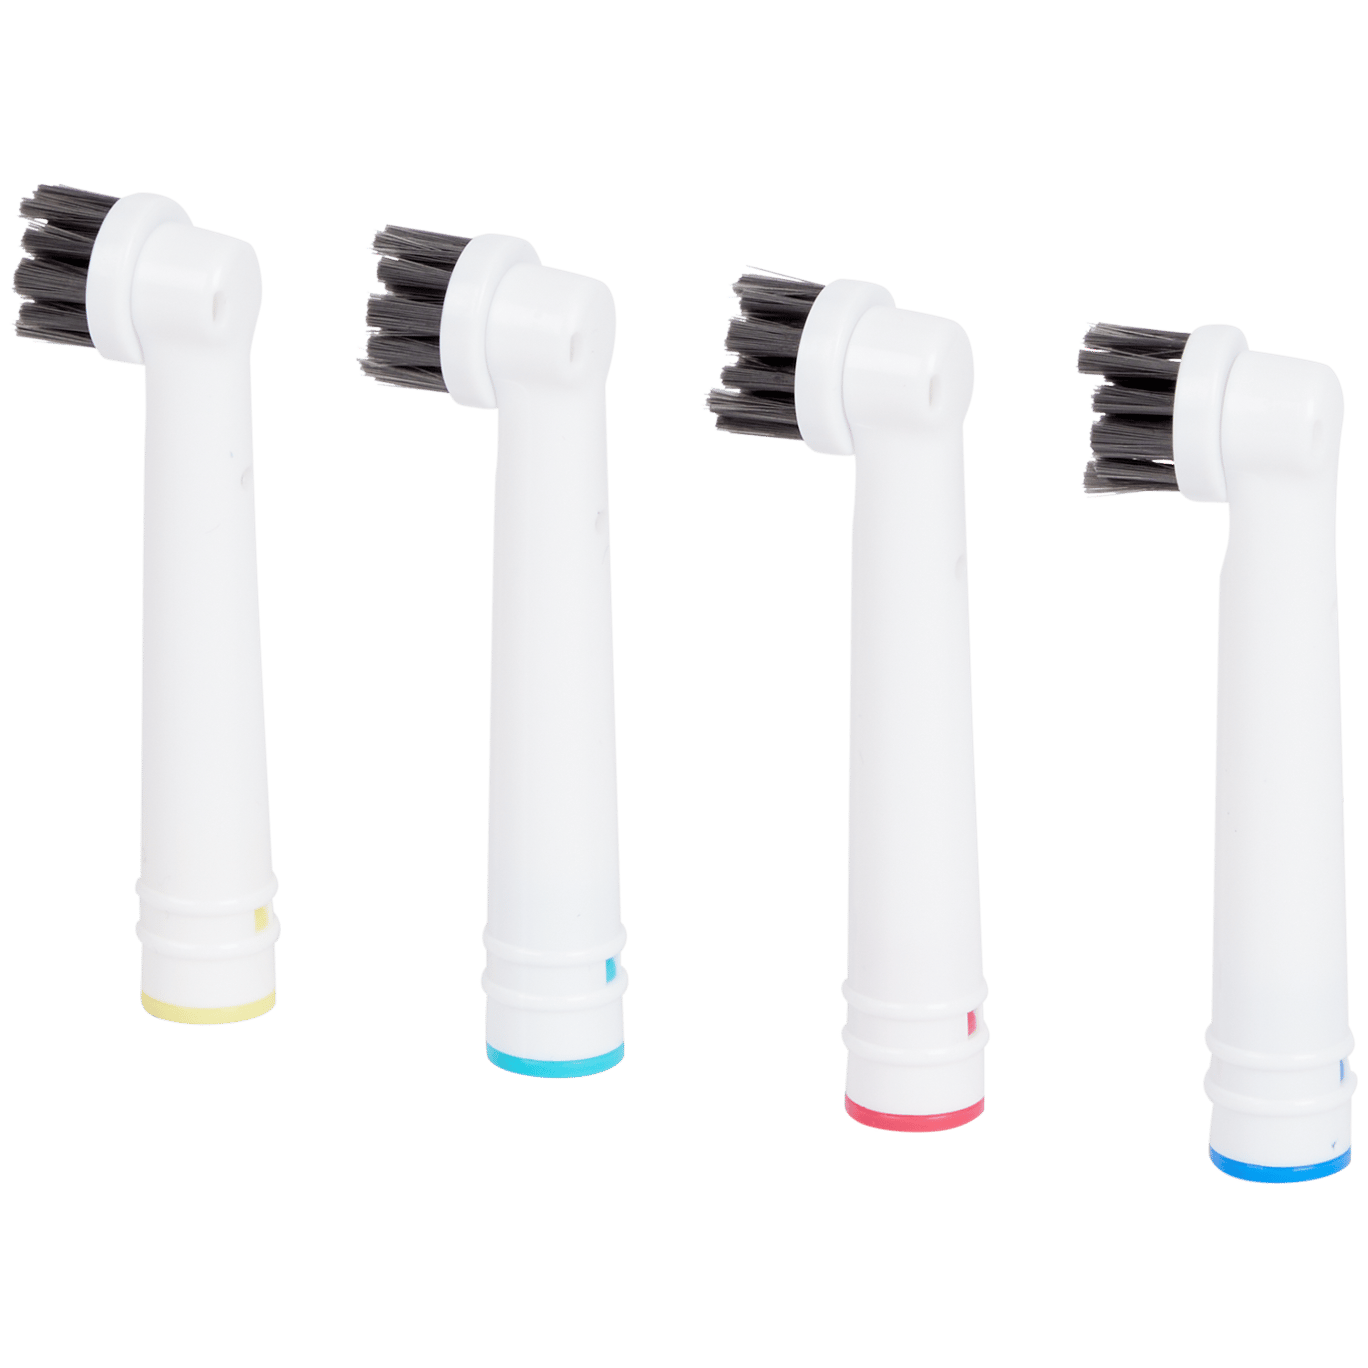 Têtes de brosse à dents électrique au charbon actif